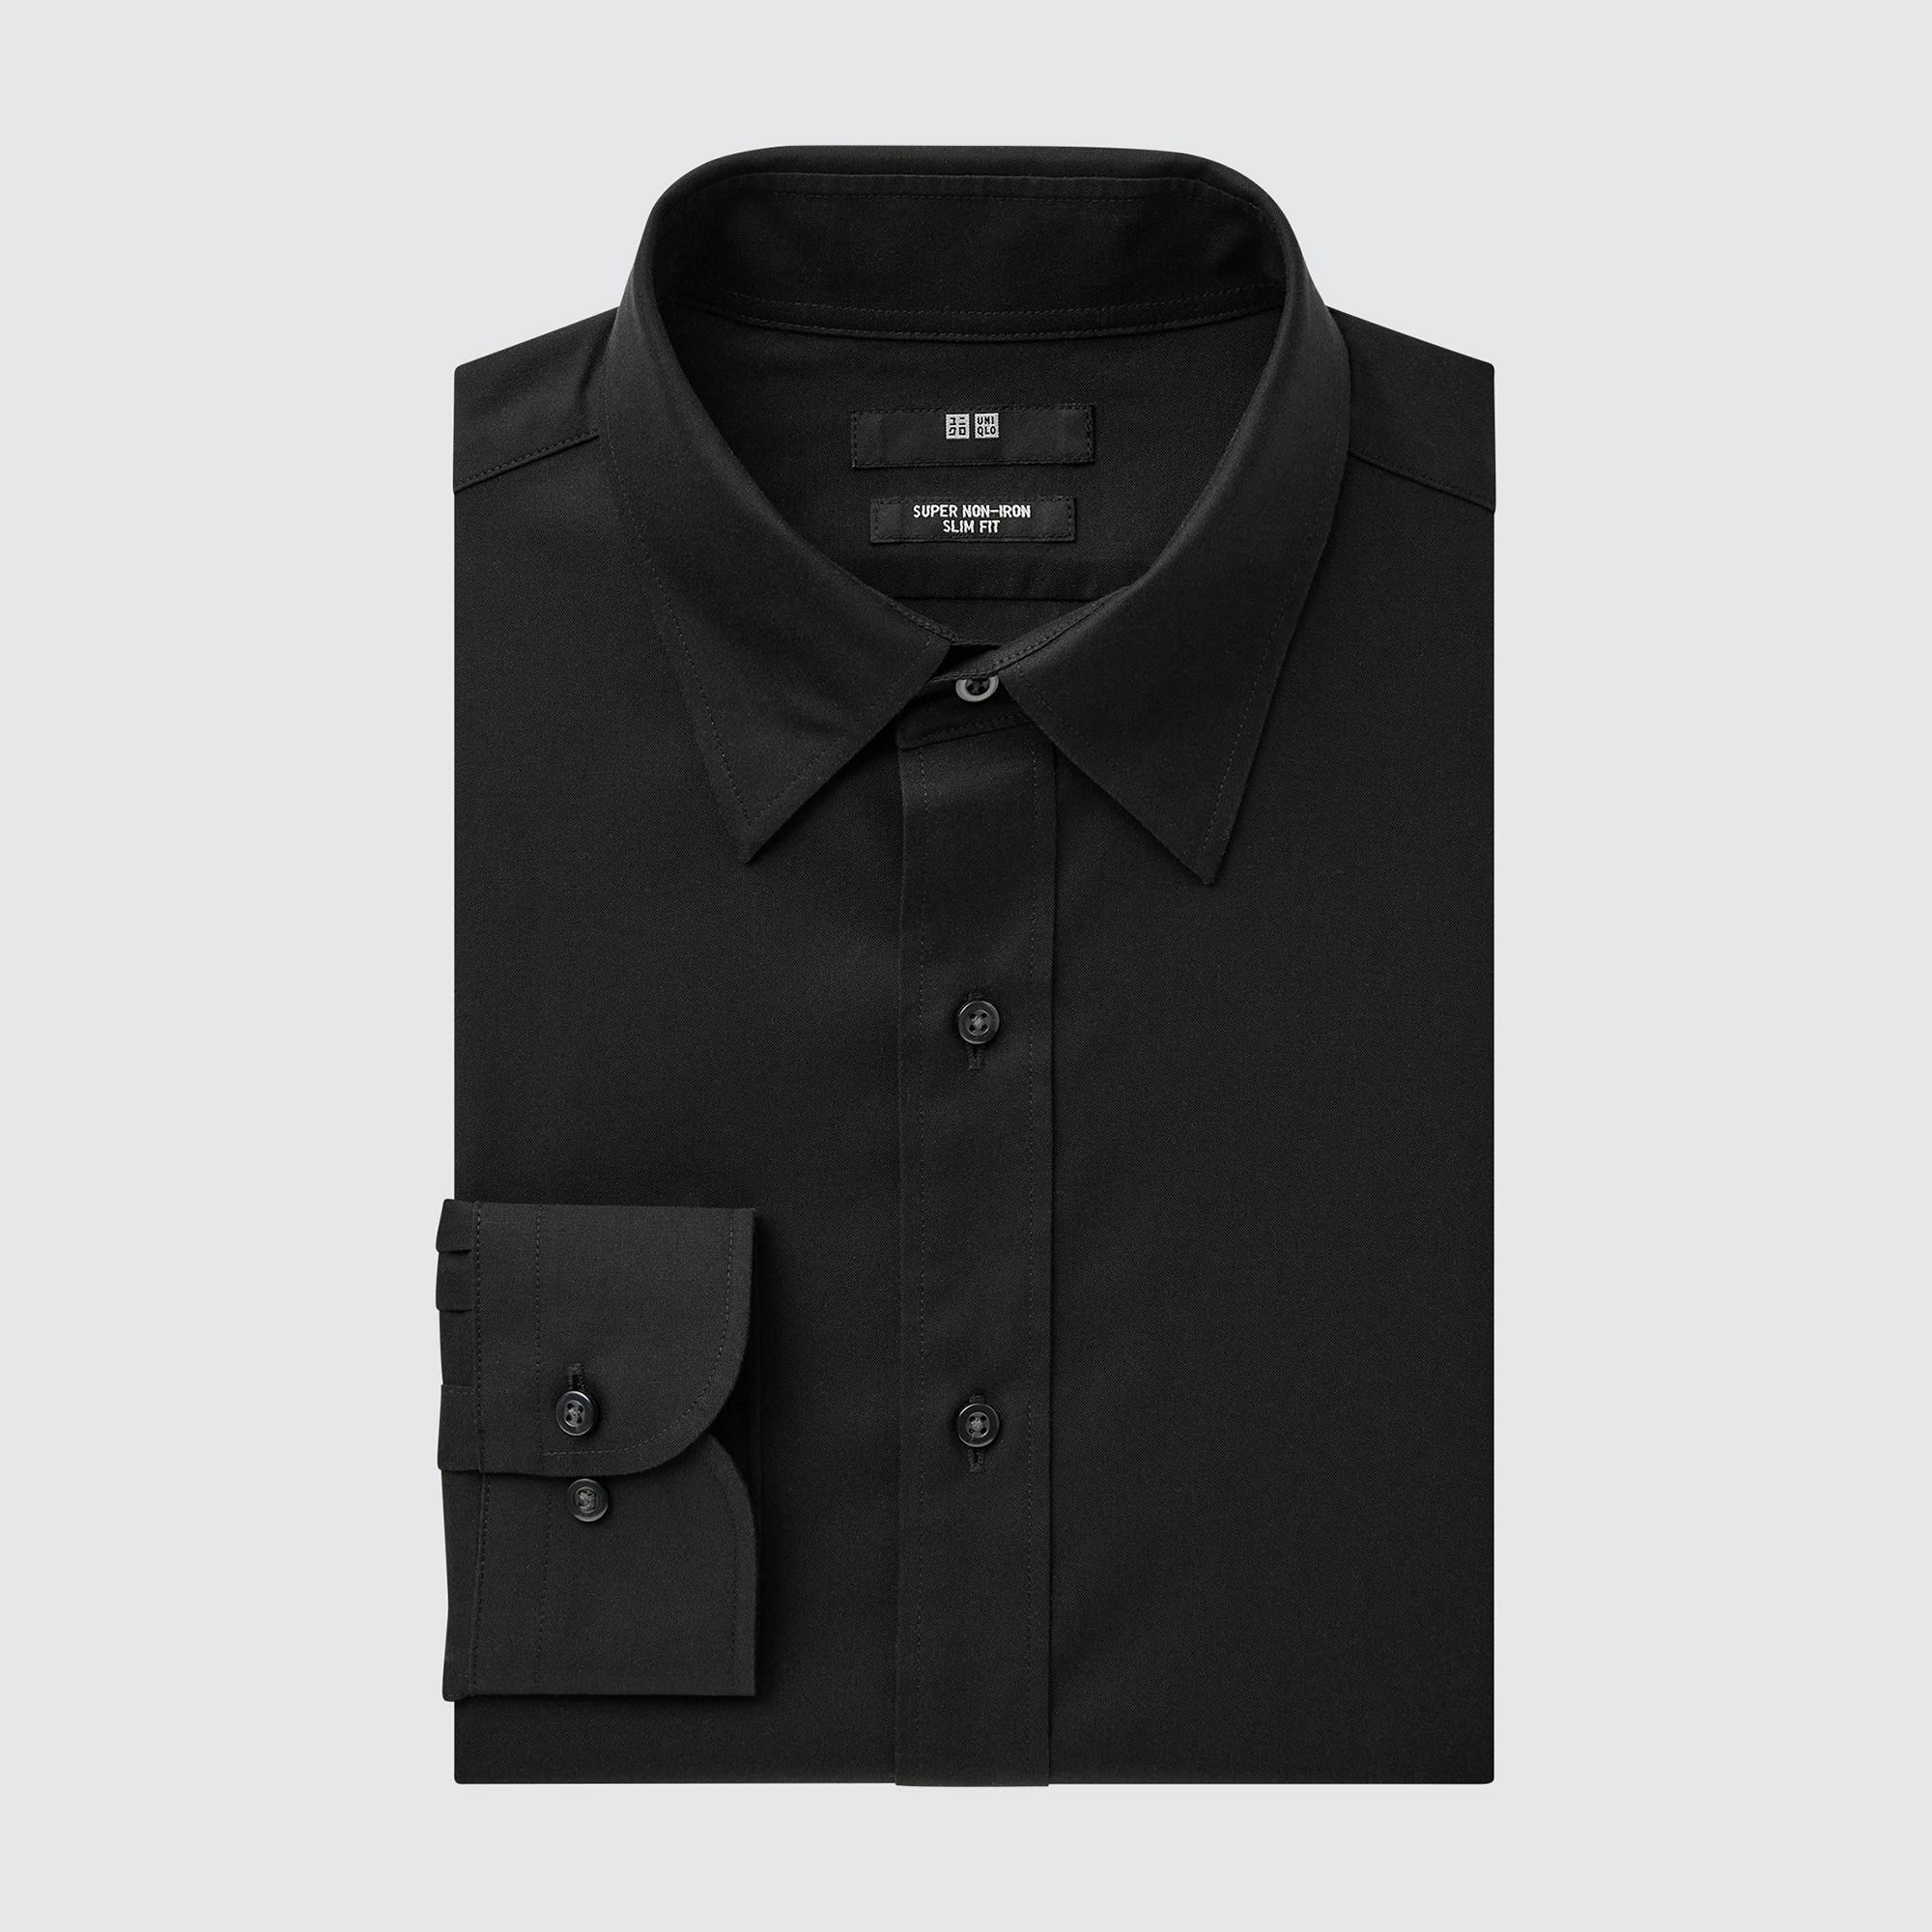 Рубашка мужская UNIQLO 453094COL09 черная S (доставка из-за рубежа)